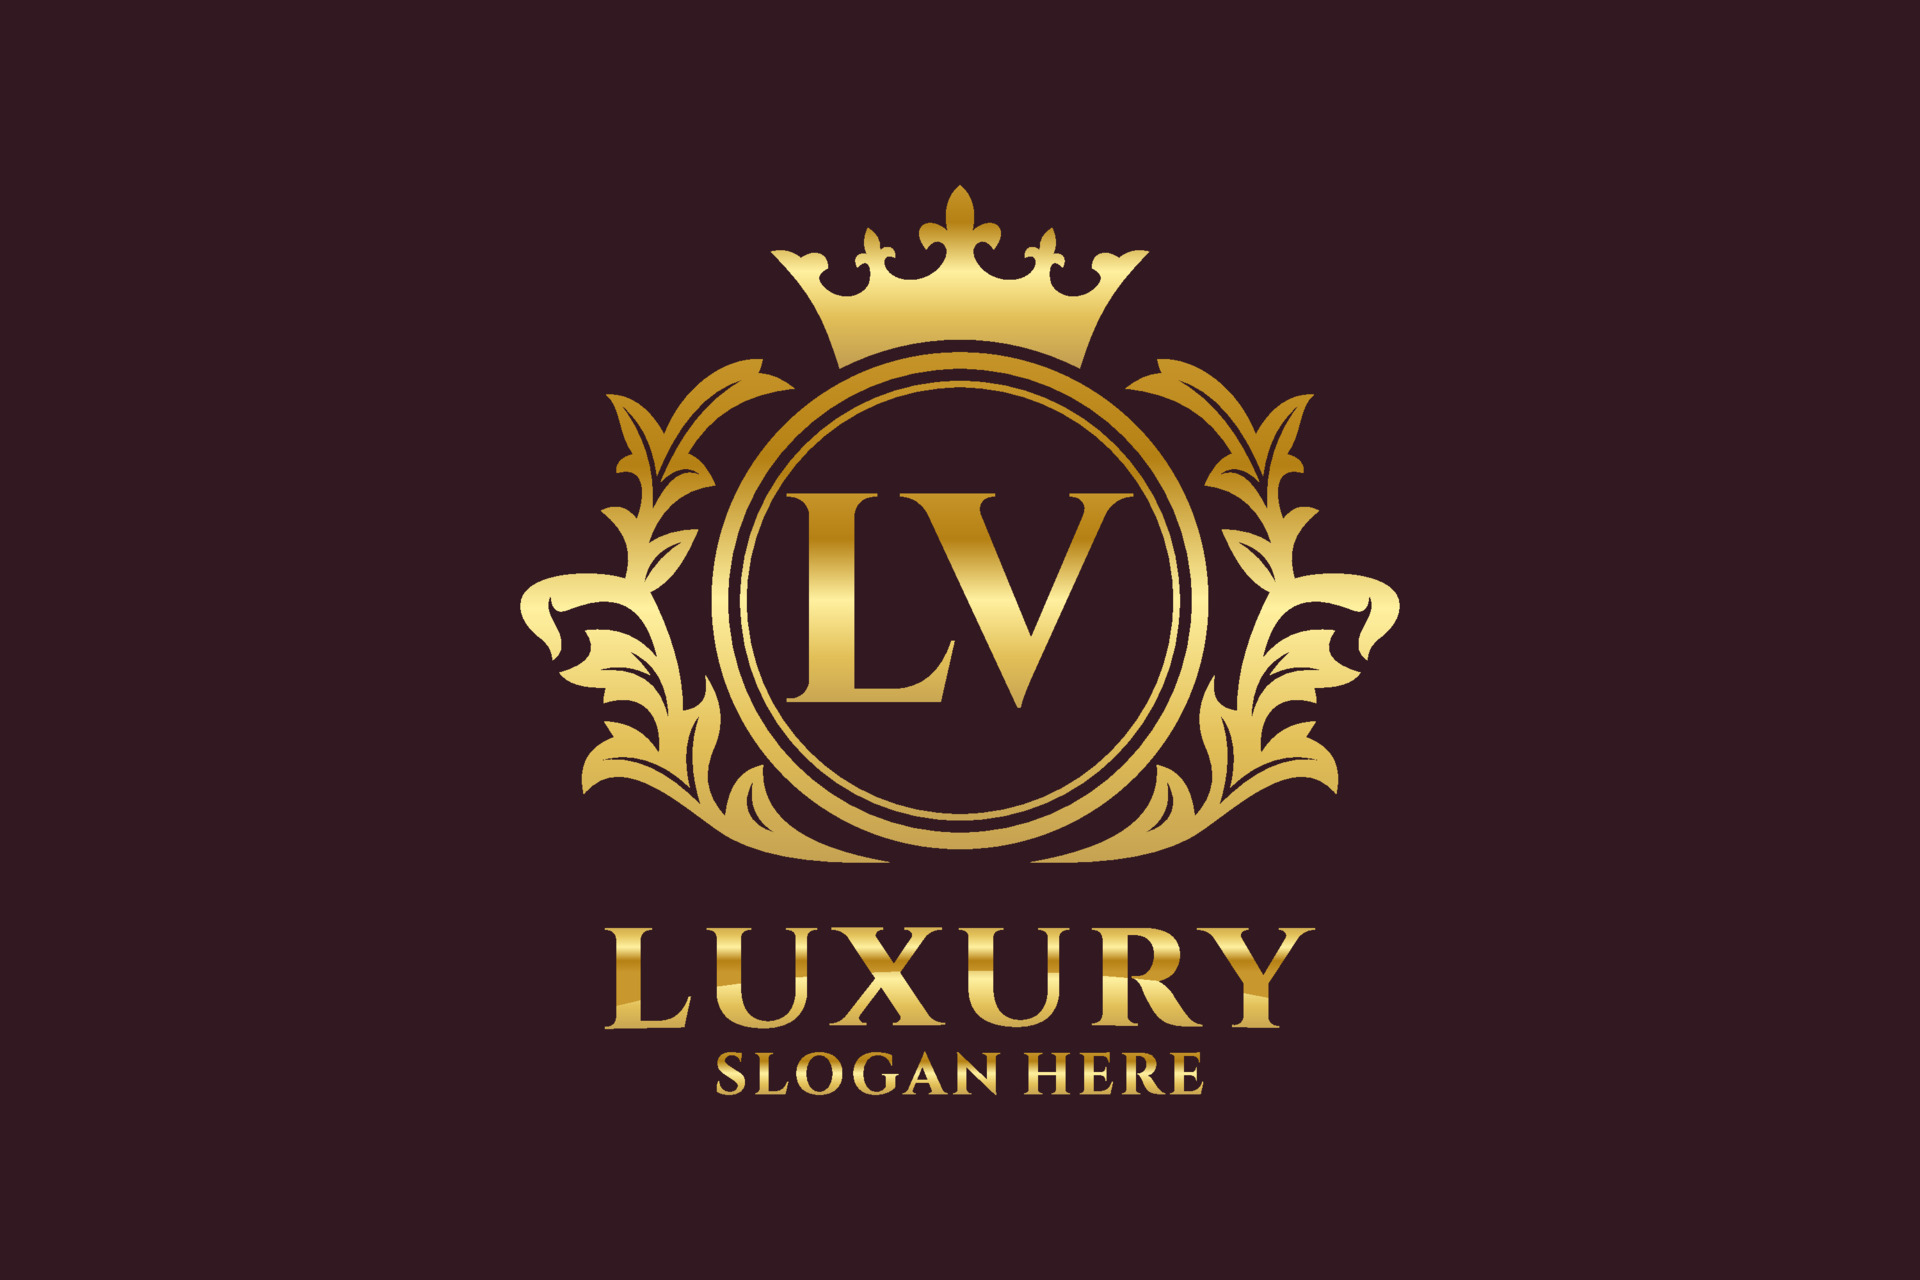 LV Letter Royal Luxury Logo Template In Vector Art For Restaurant